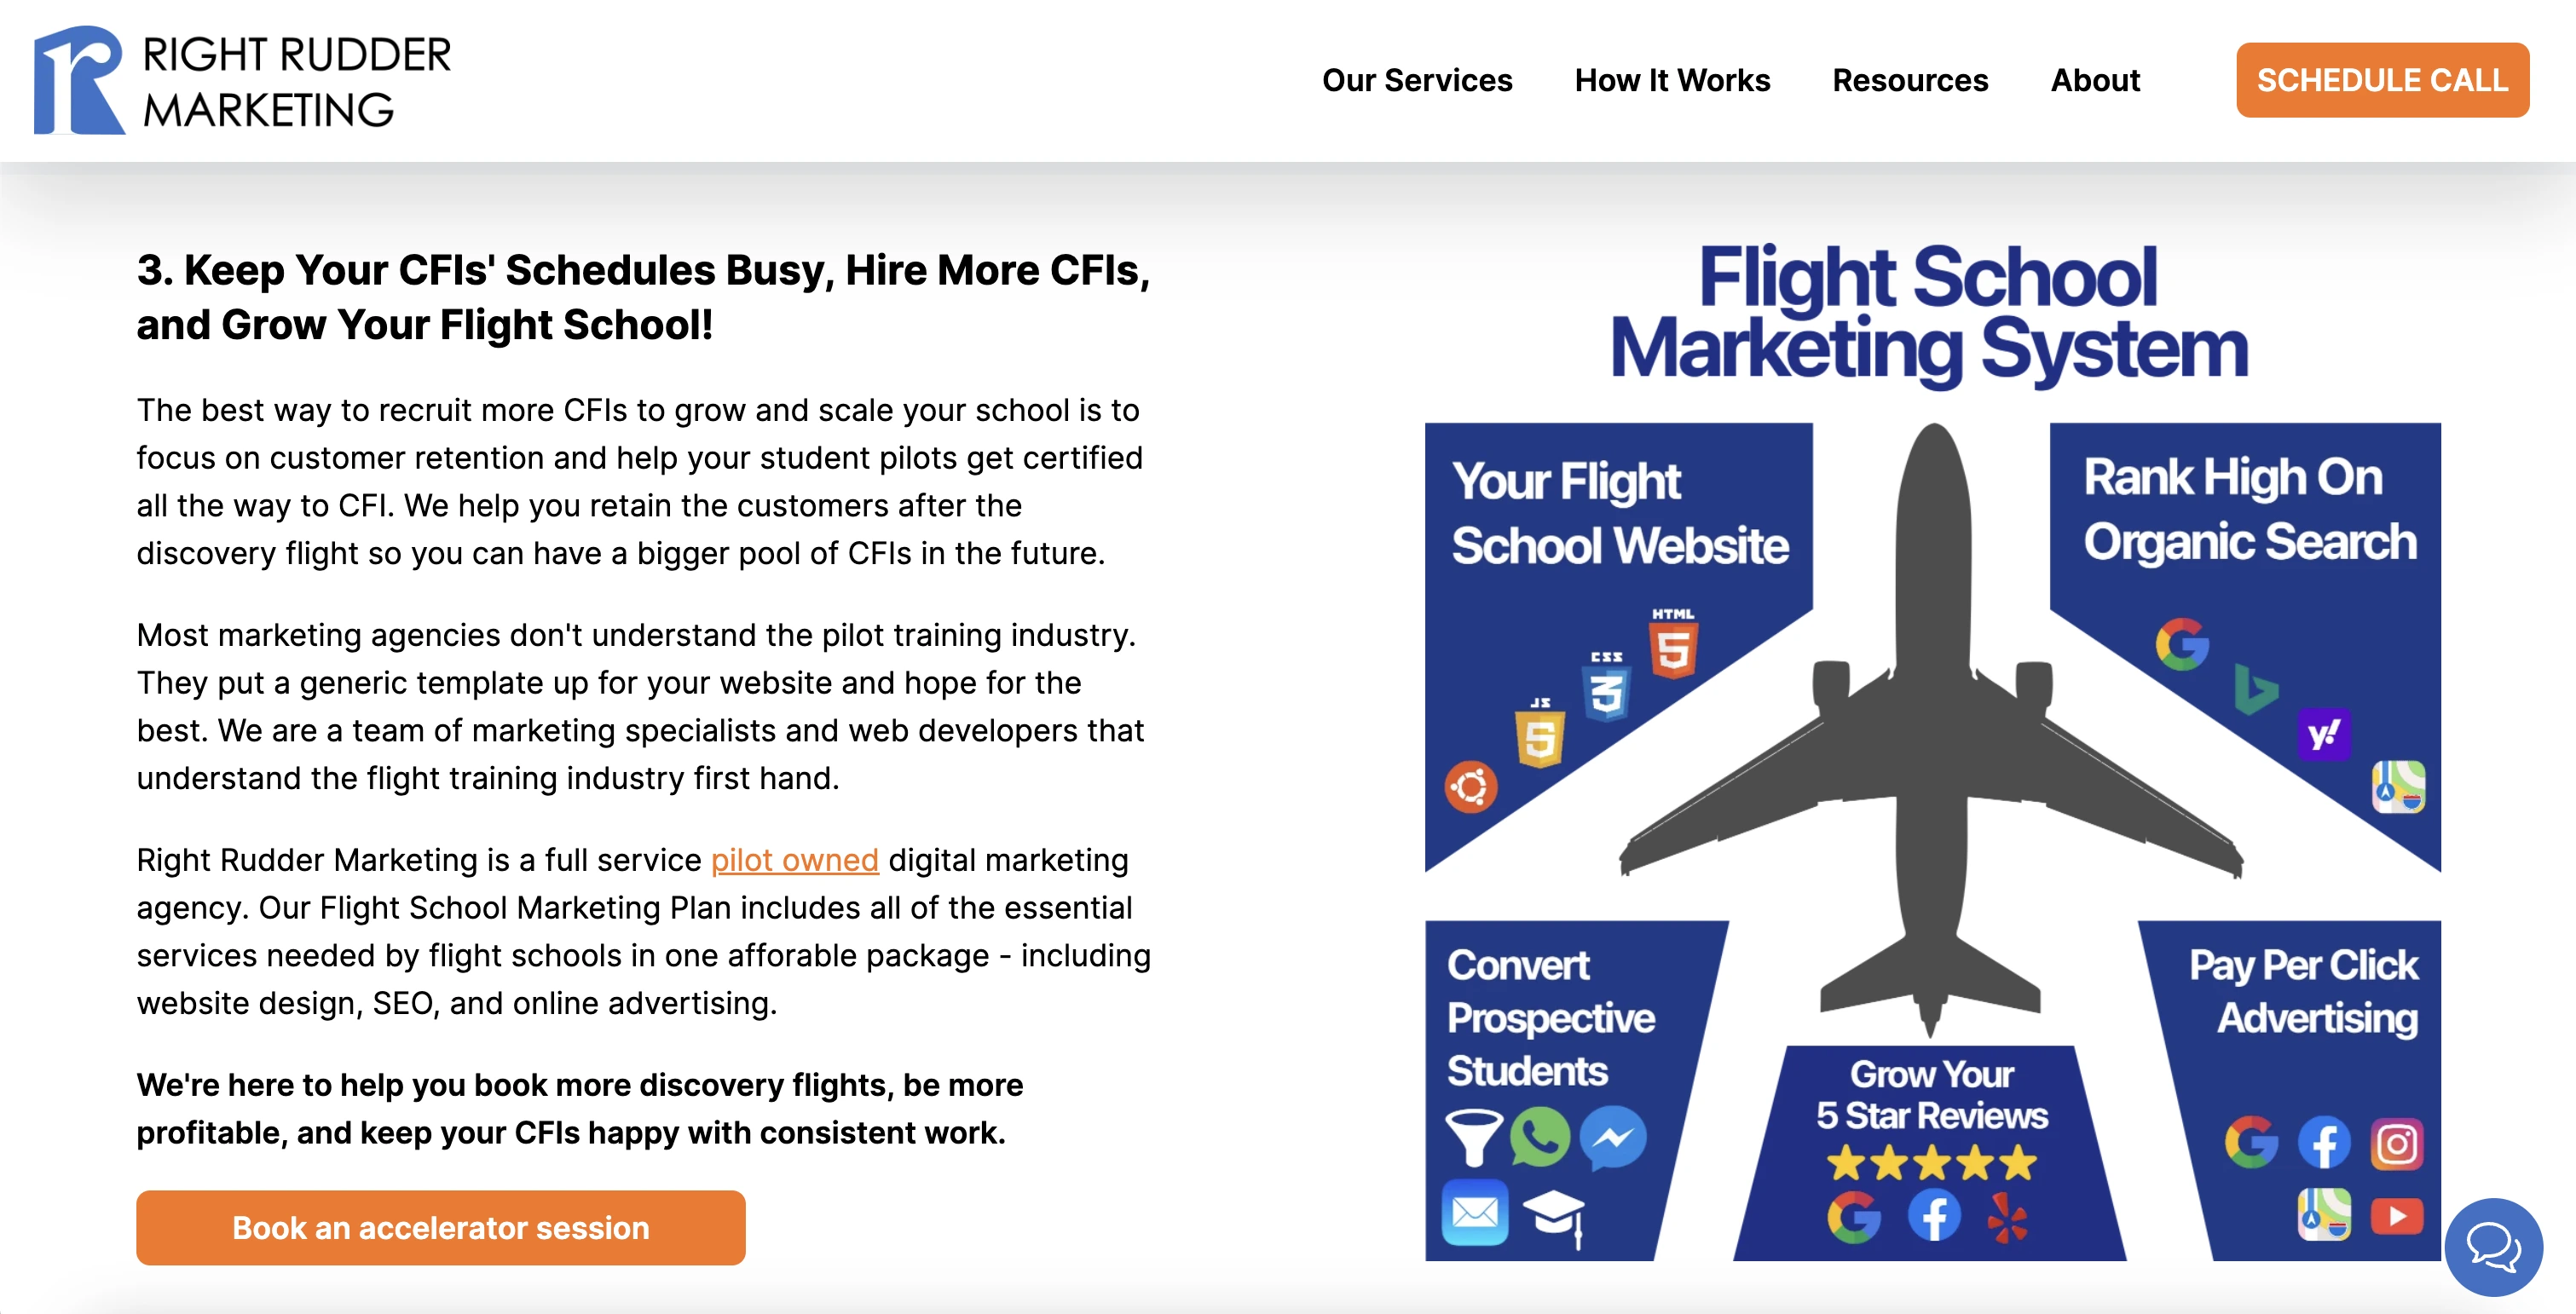 The Right Rudder Marketing Flight School Marketing System